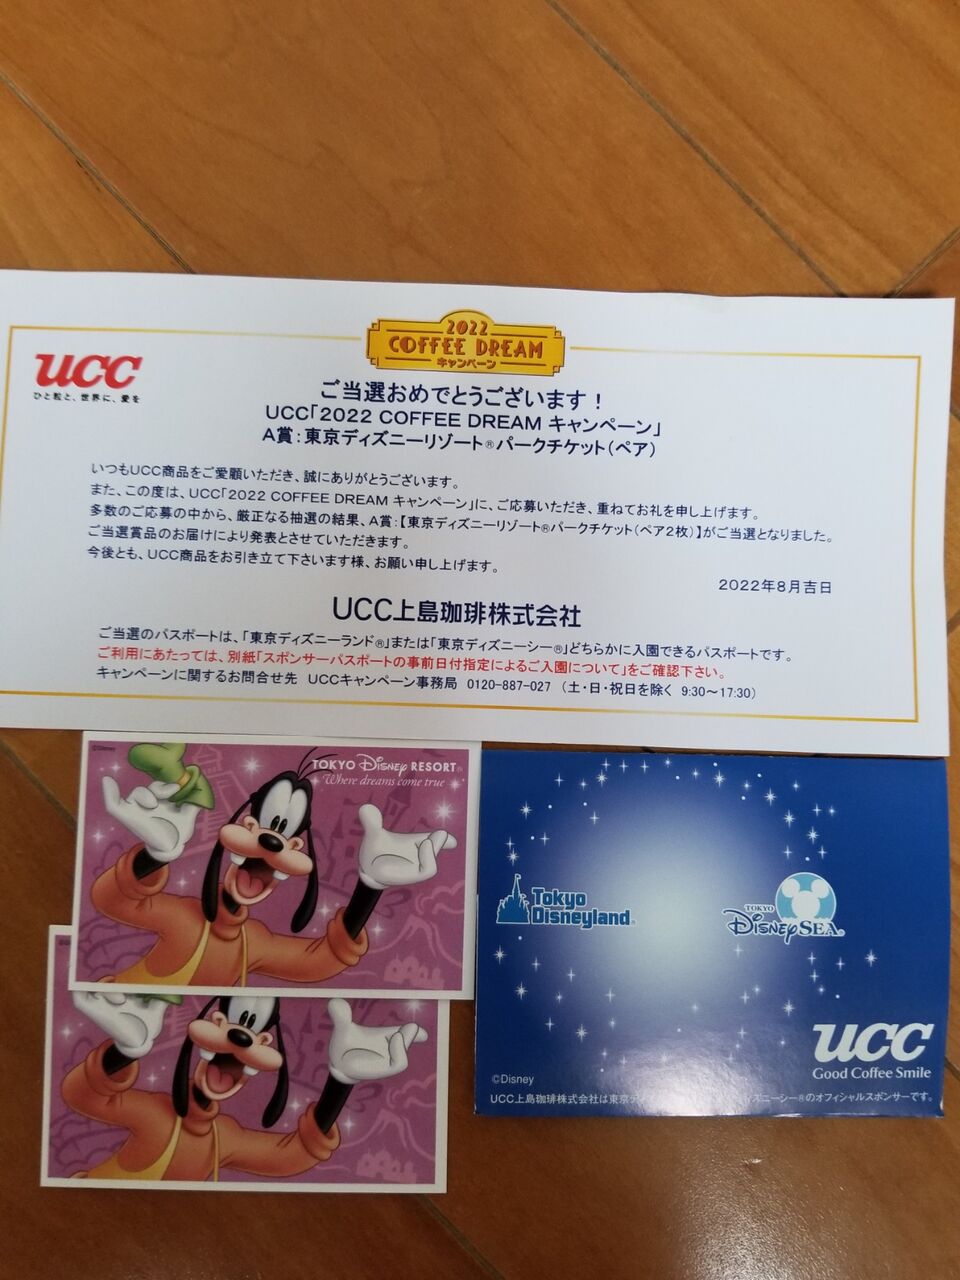 Ucc 22coffeedreamキャンペーン に当選 東京ディズニーリゾートのペアチケットが送られてきた ゆうゆのあれこれ日記